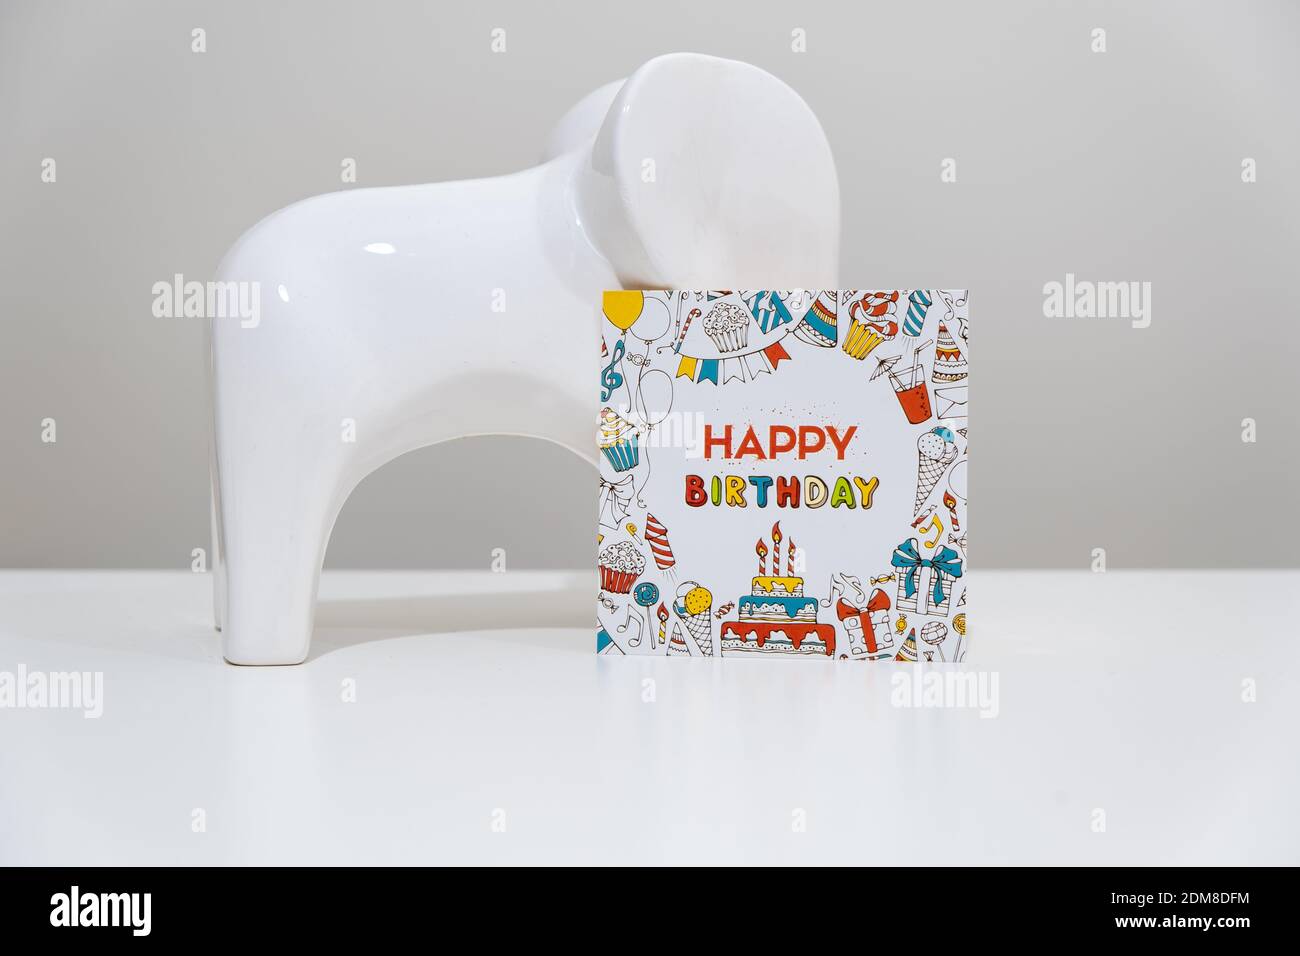 Biglietto di compleanno e oggetto elefante. Concetto di festa di compleanno. Composizione creativa fatta di oggetto elefante e carta di compleanno. Foto Stock